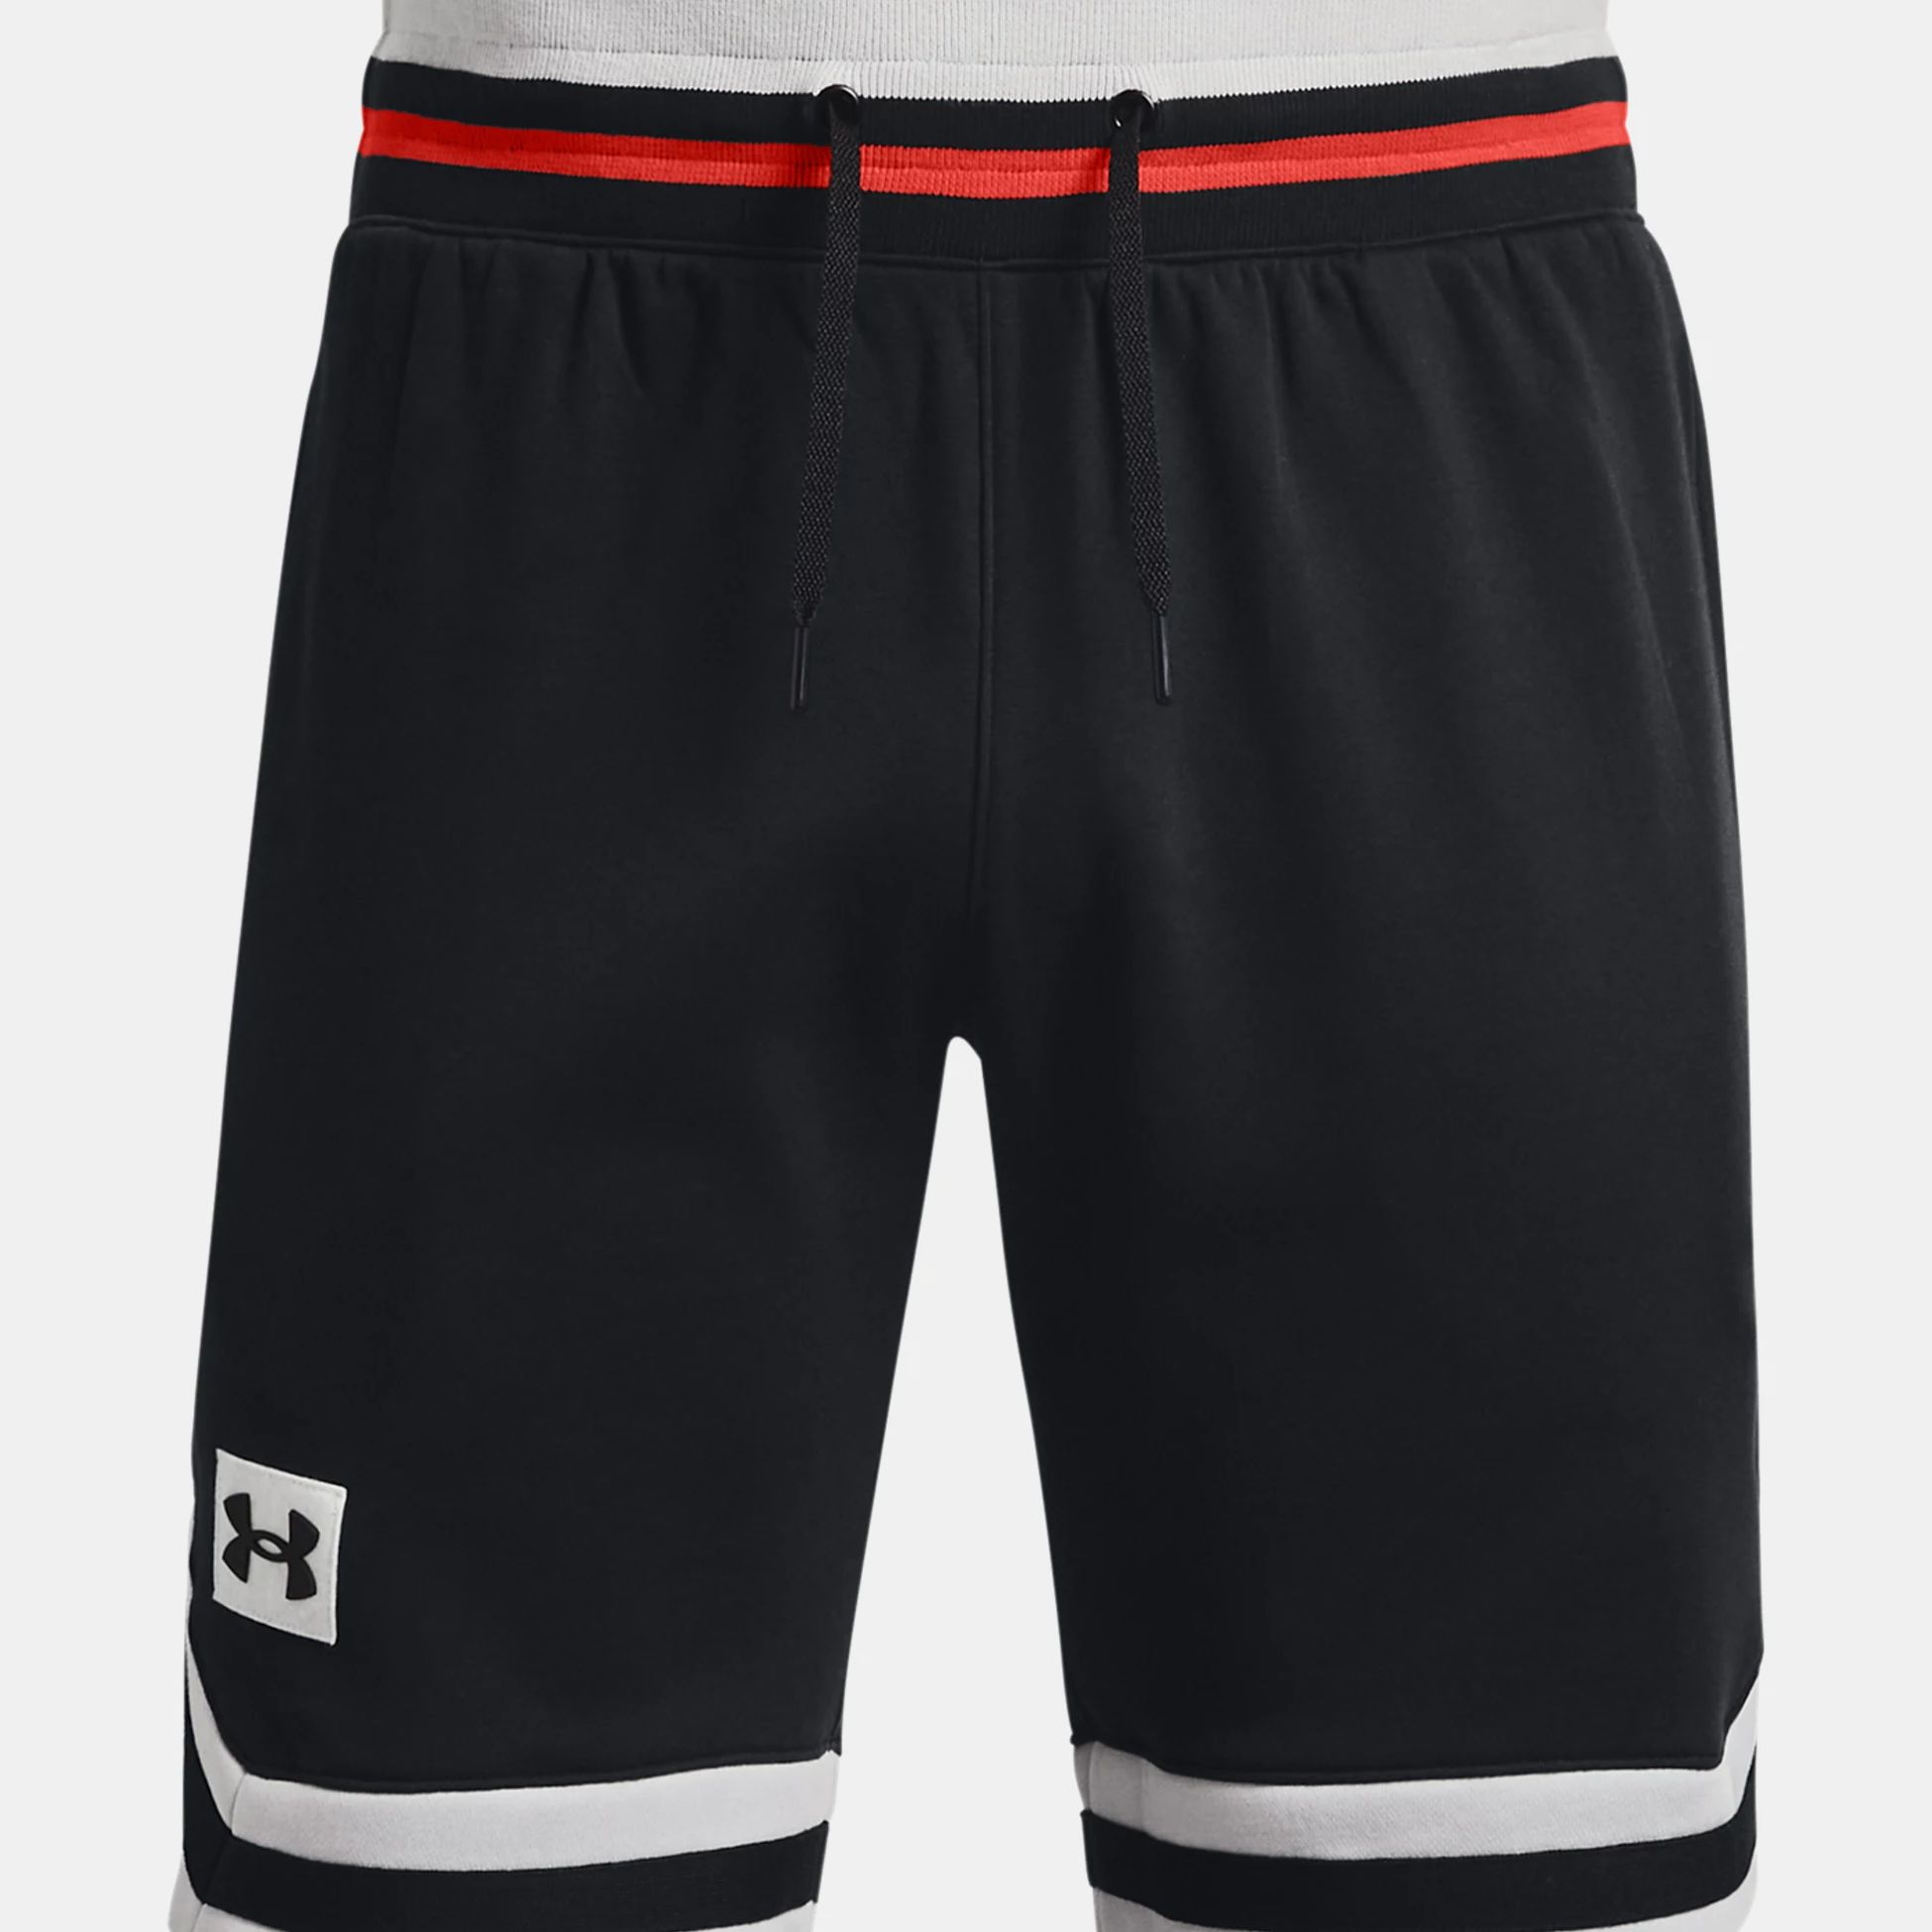 Shorts -  under armour UA Rival Fleece Alma Mater Shorts